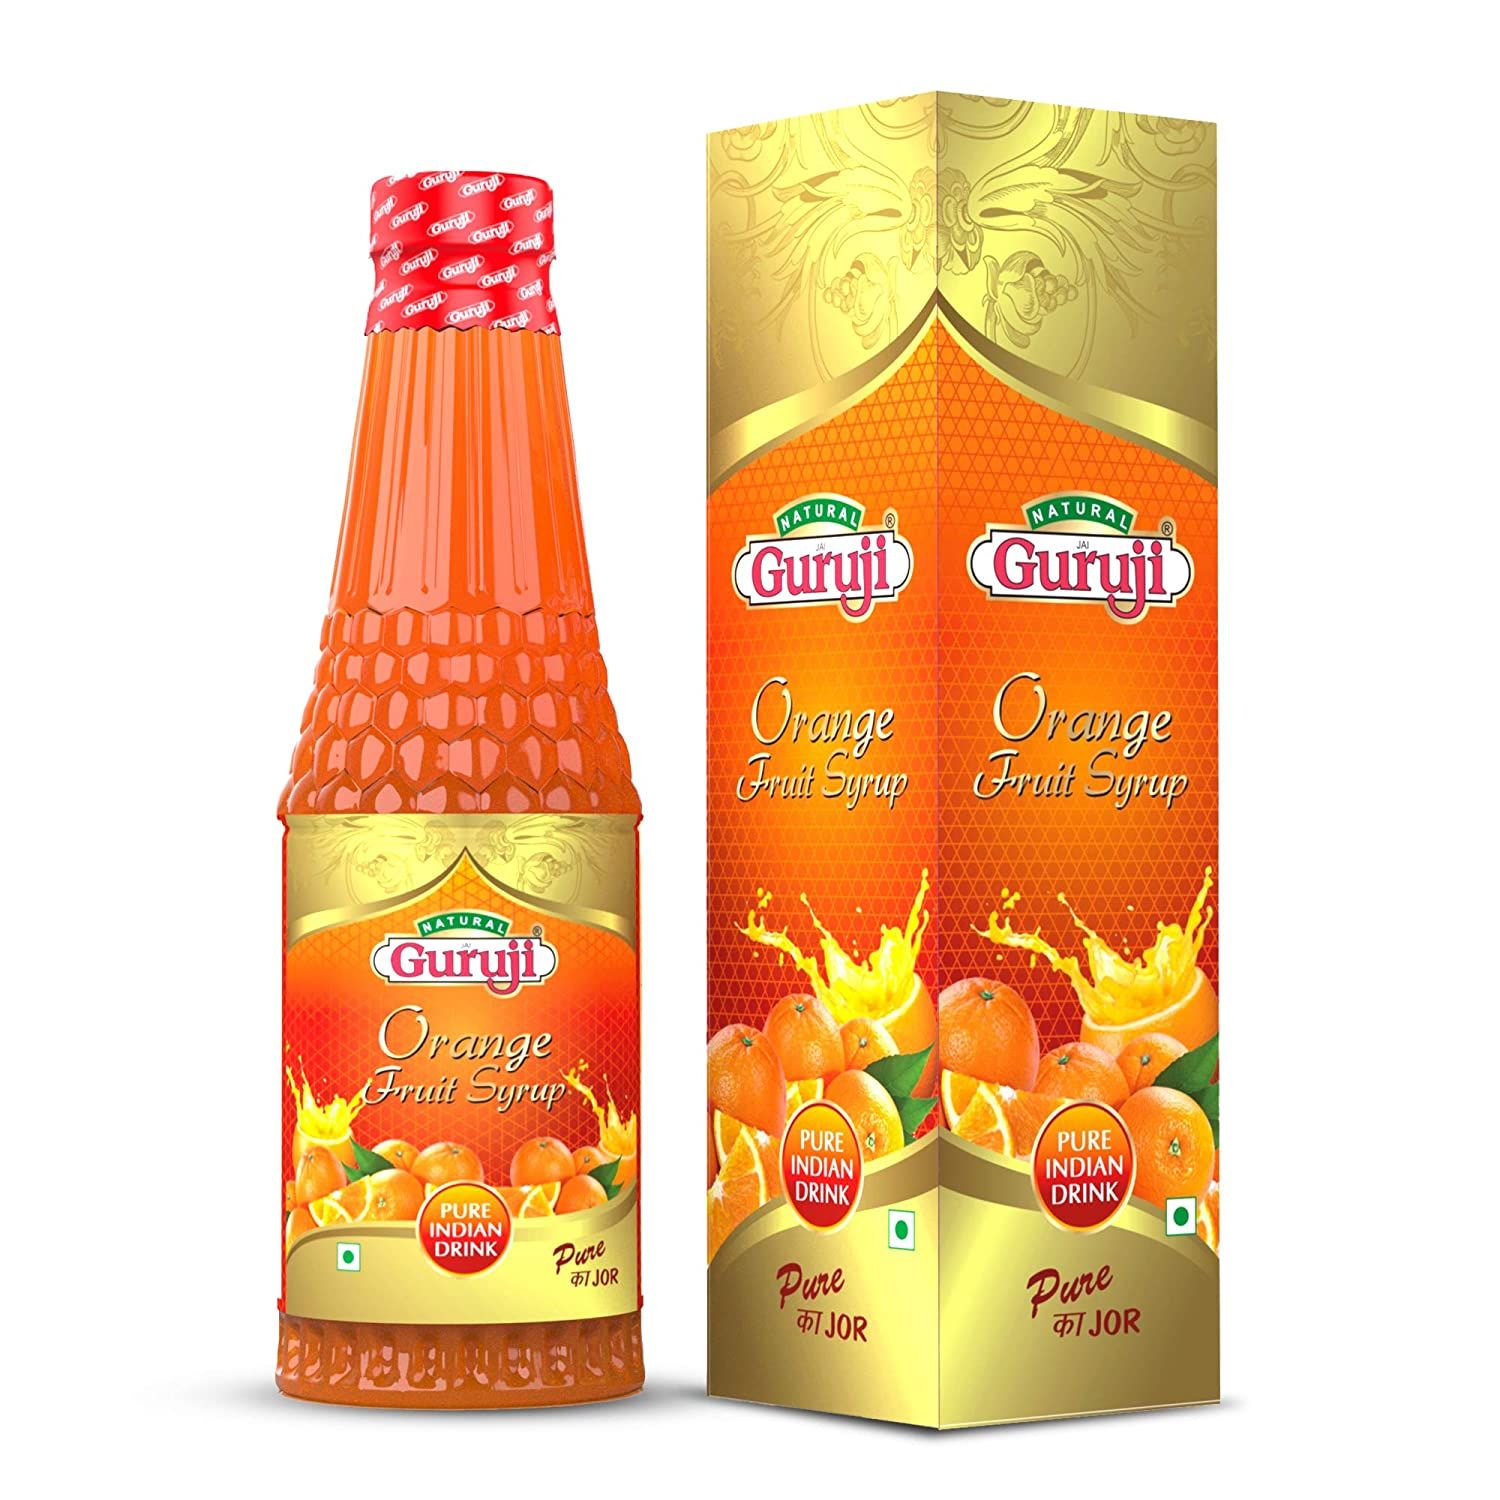 Jai Guruji Orange Fruit Syrup Sharbat Image